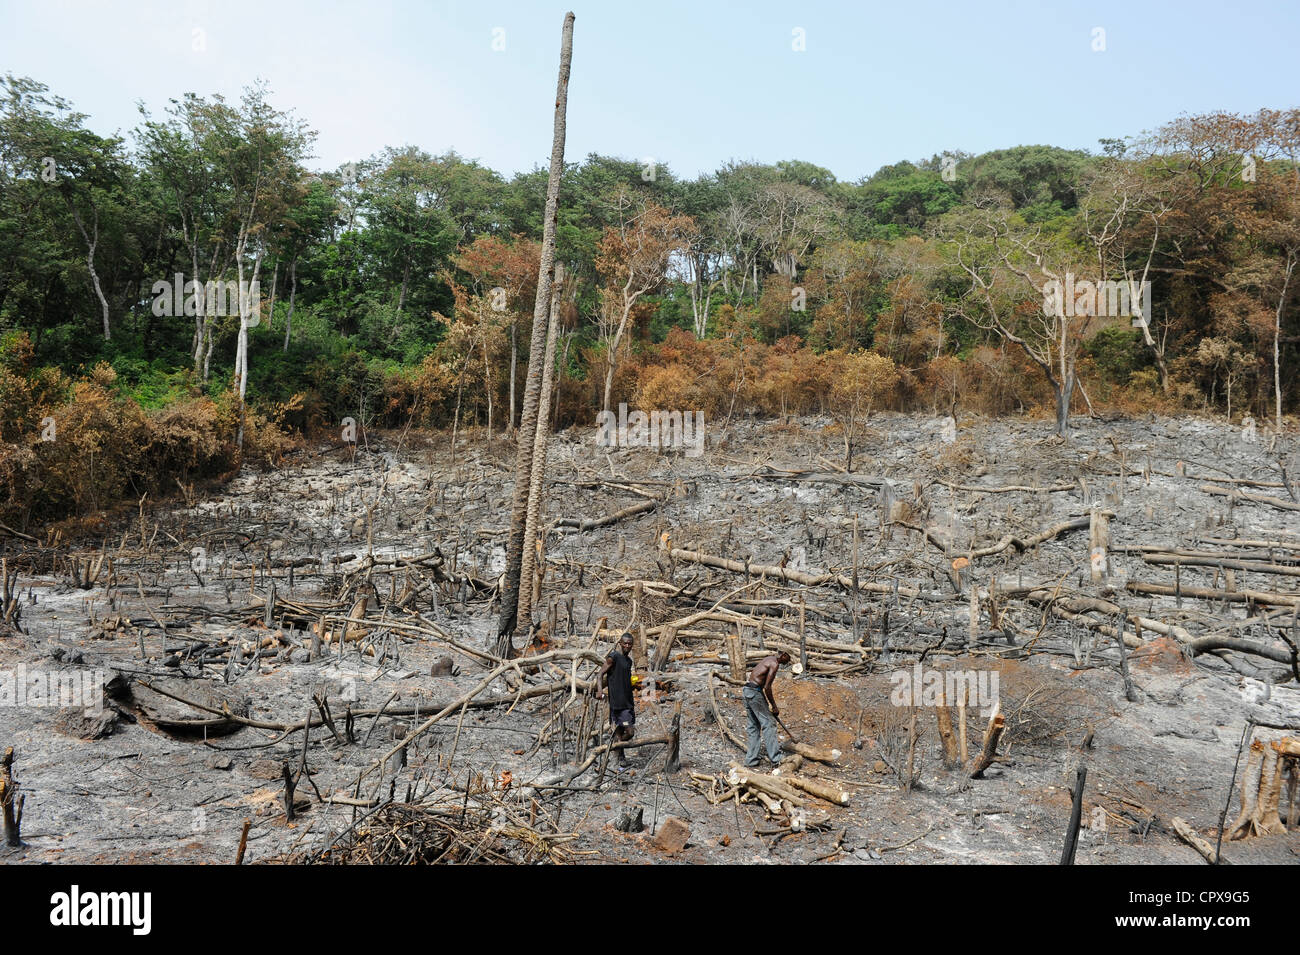 SIERRA LEONE, Kent, l'exploitation forestière illégale de forêt tropicale à l'ouest de la péninsule de la zone forêt , le bois est utilisé pour le charbon de bois et bois de chauffage Banque D'Images